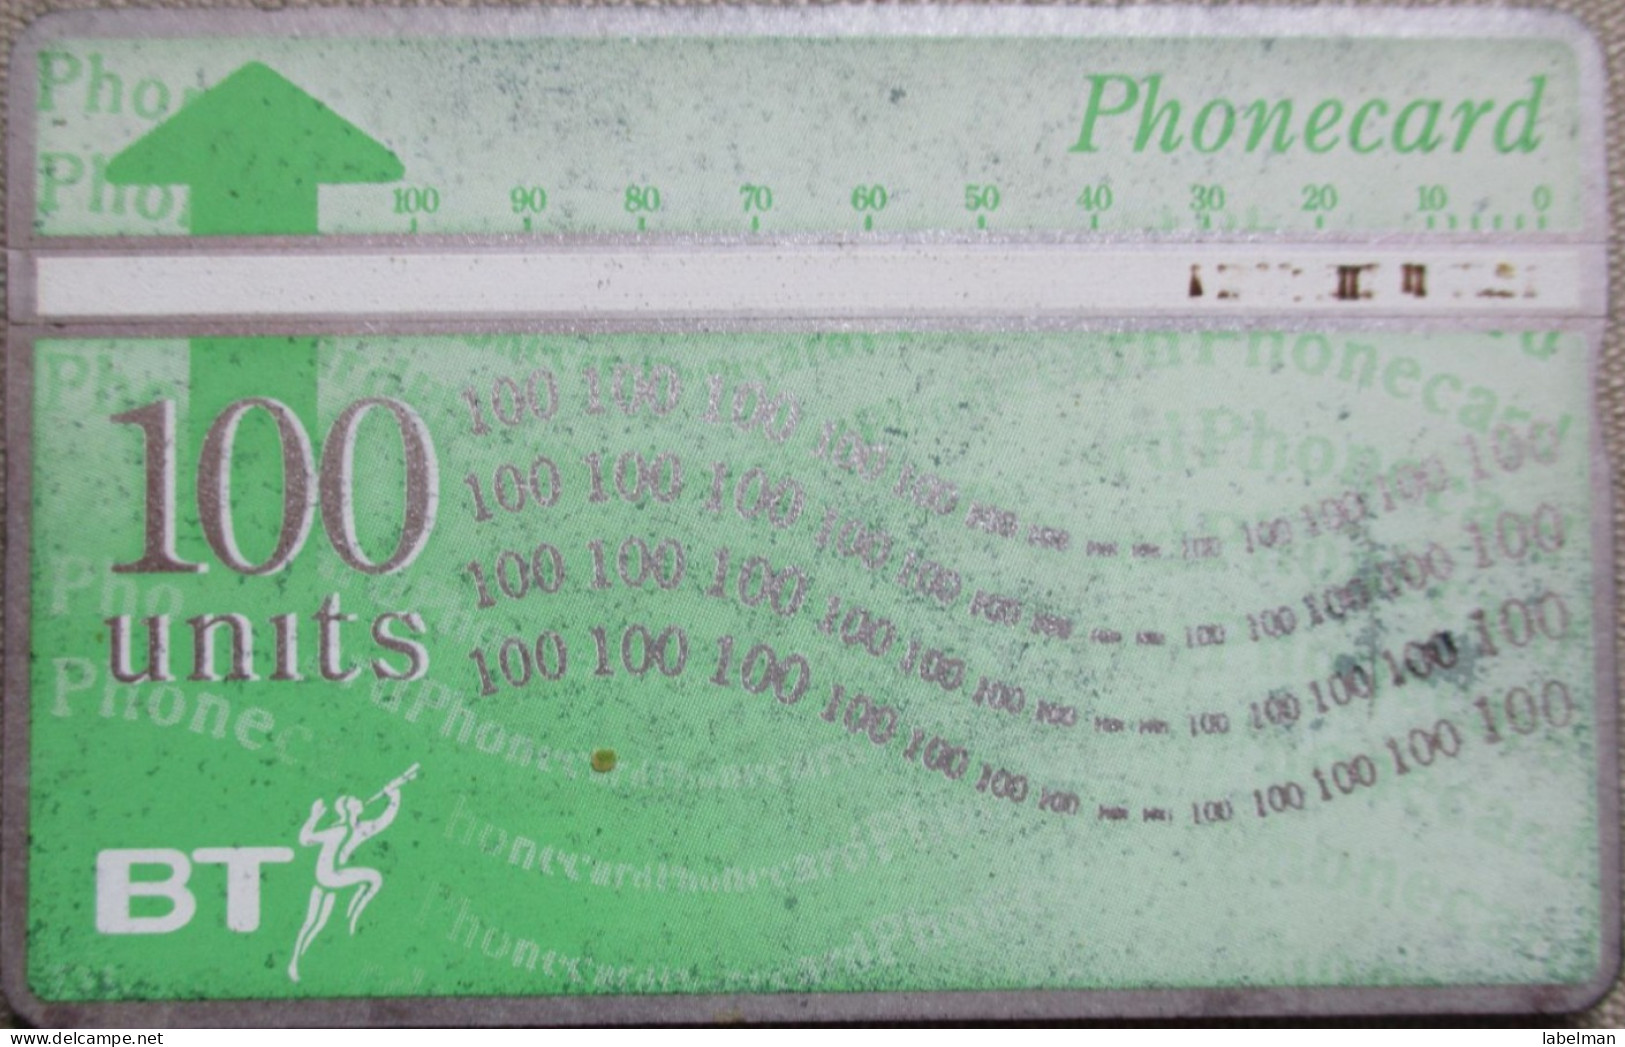 UNITED KINGDOM UK TELECARD TELEPHONE PHONE TELEFONWERTKARTE PHONECARD CARTELA CARD CARTE KARTE COLLECTOR BEZEQ 50 UNITS - BT Global Cards (Prepaid)